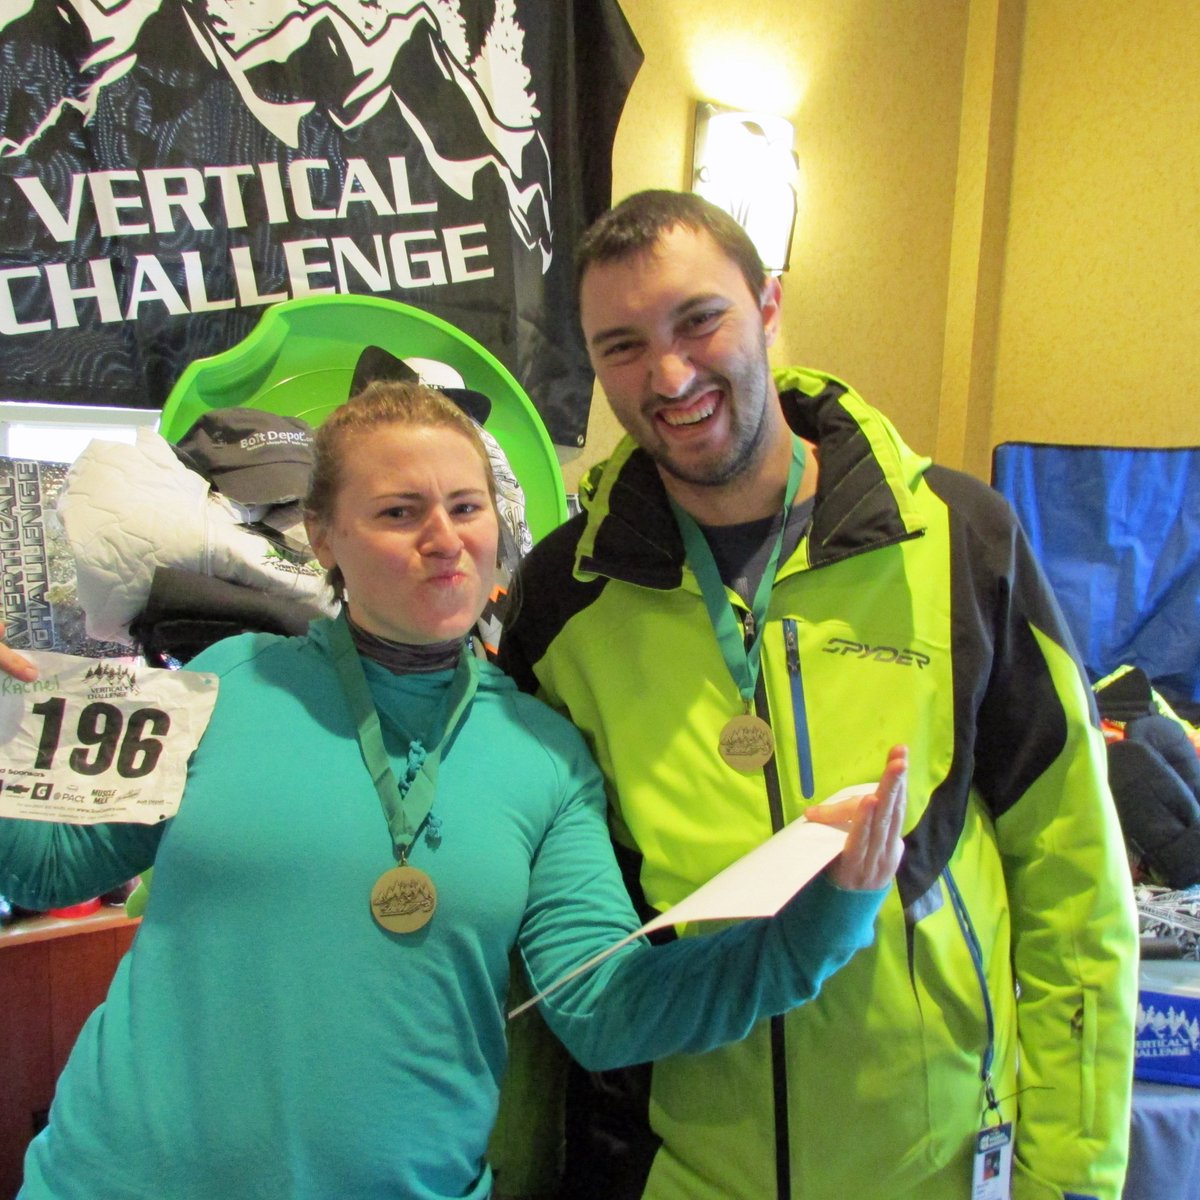 It's all about the medal, yo! #skivc #RacingIsFun #ski #snowboard